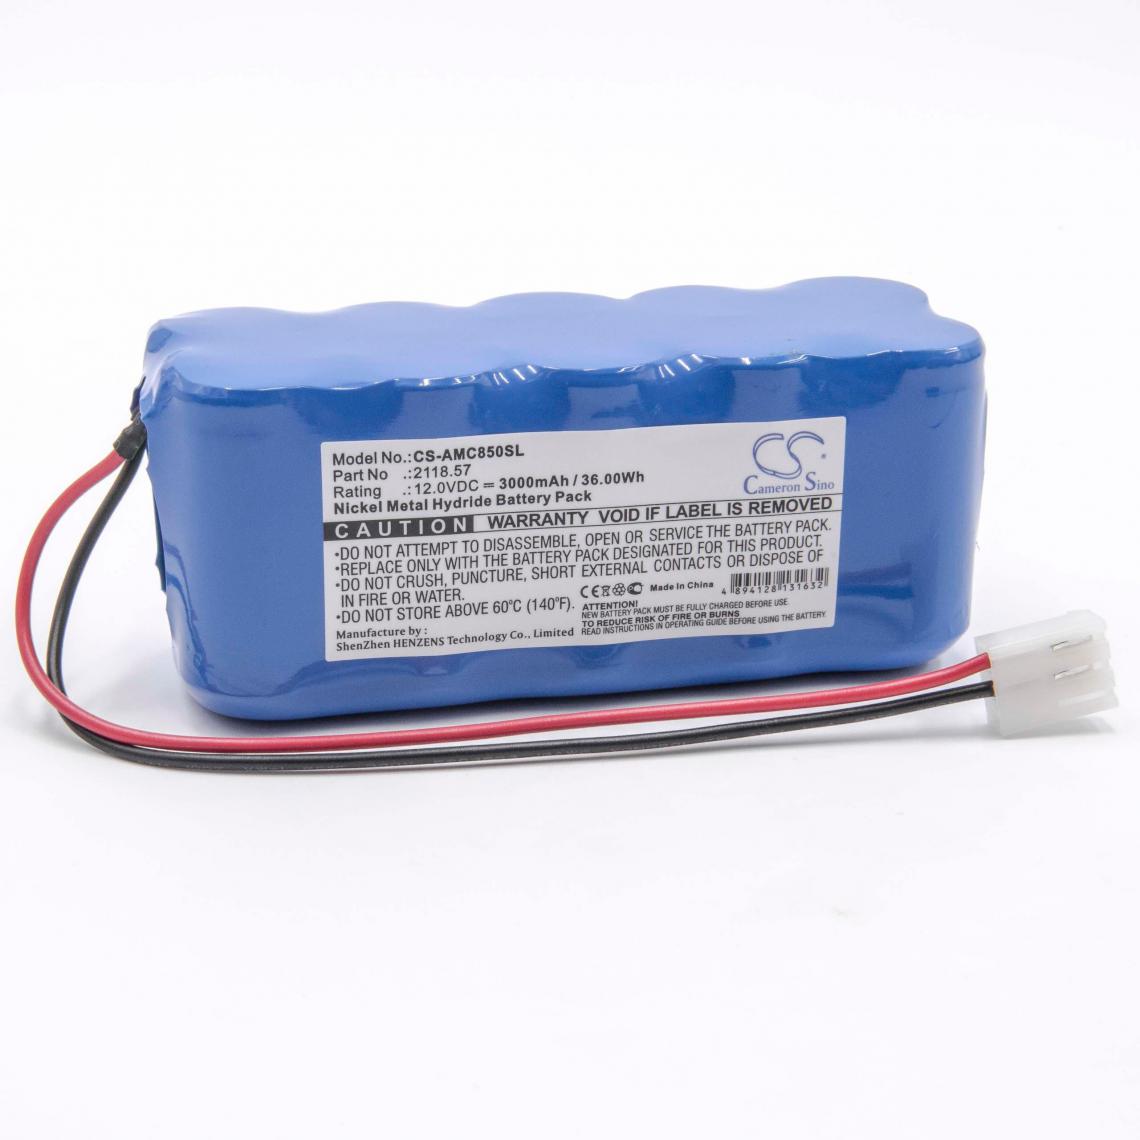 Vhbw - vhbw Batterie remplacement pour AEMC 2118.57 pour outil de mesure (3000mAh, 12V, NiMH) - Piles rechargeables